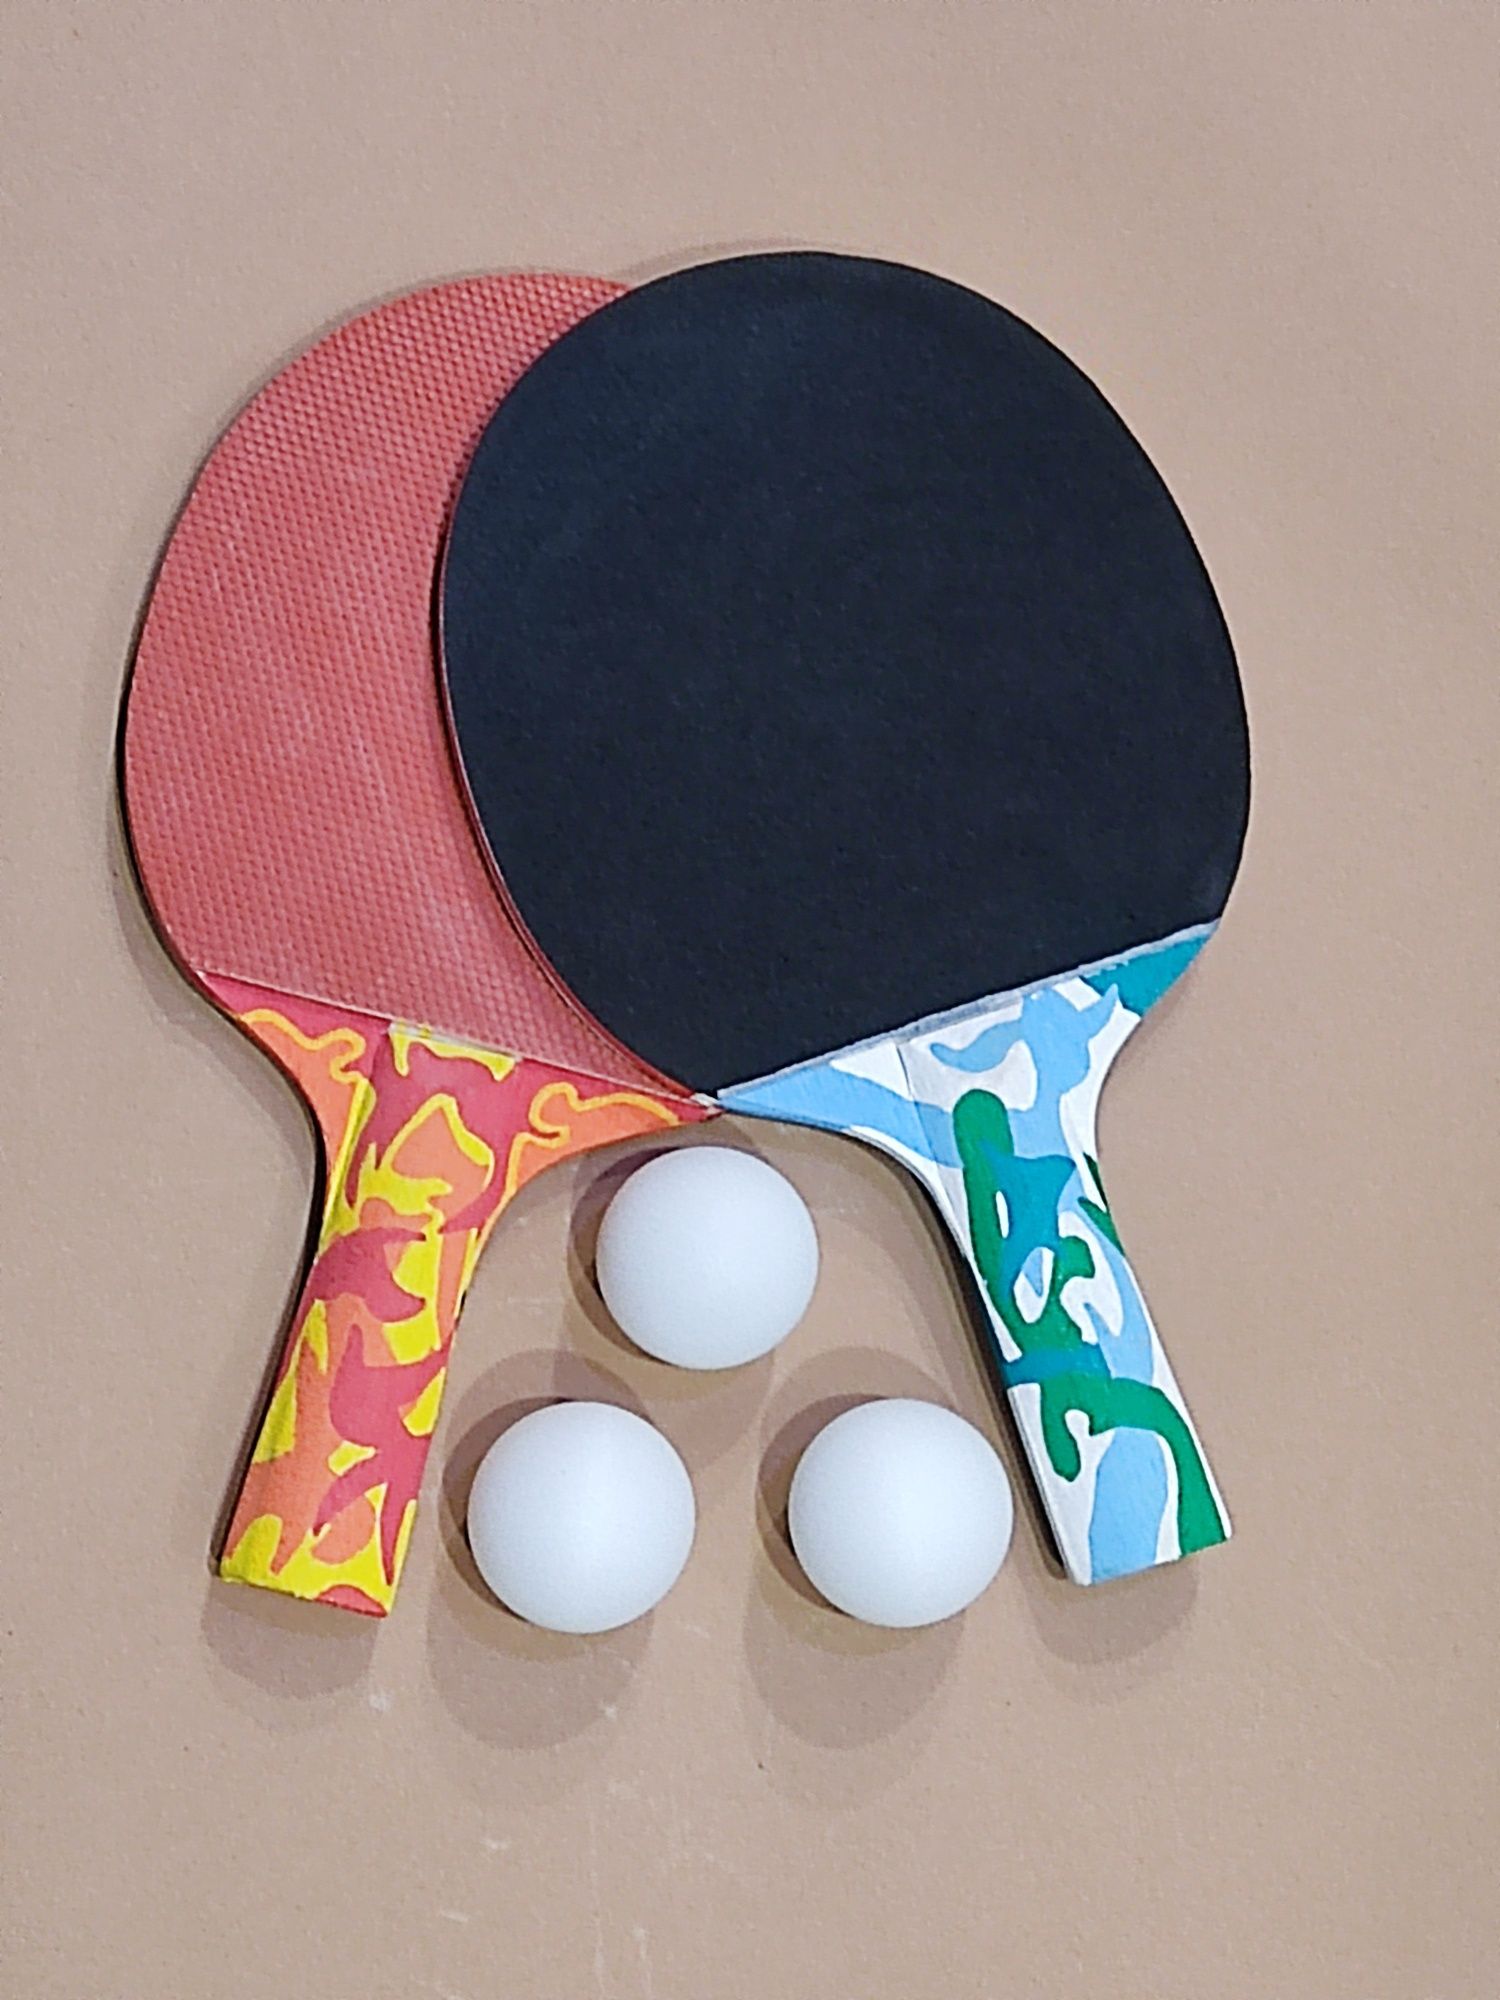 Теннисные ракетки с принтом куплено в Германии 400 грн